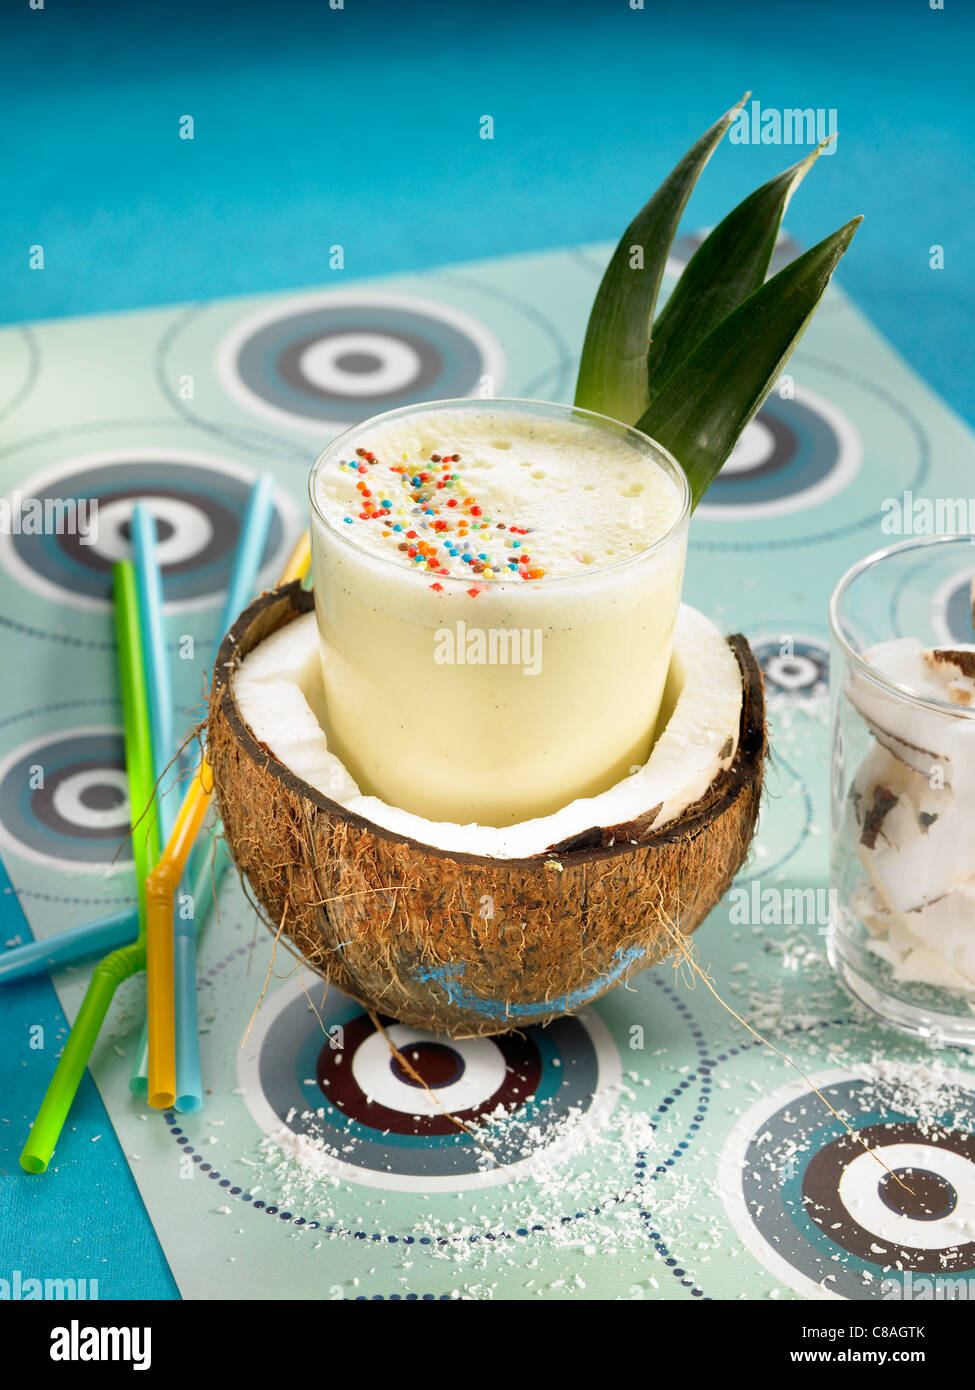 Ananas-Kokos-Milch-shake Stockfoto, Bild: 39570739 - Alamy